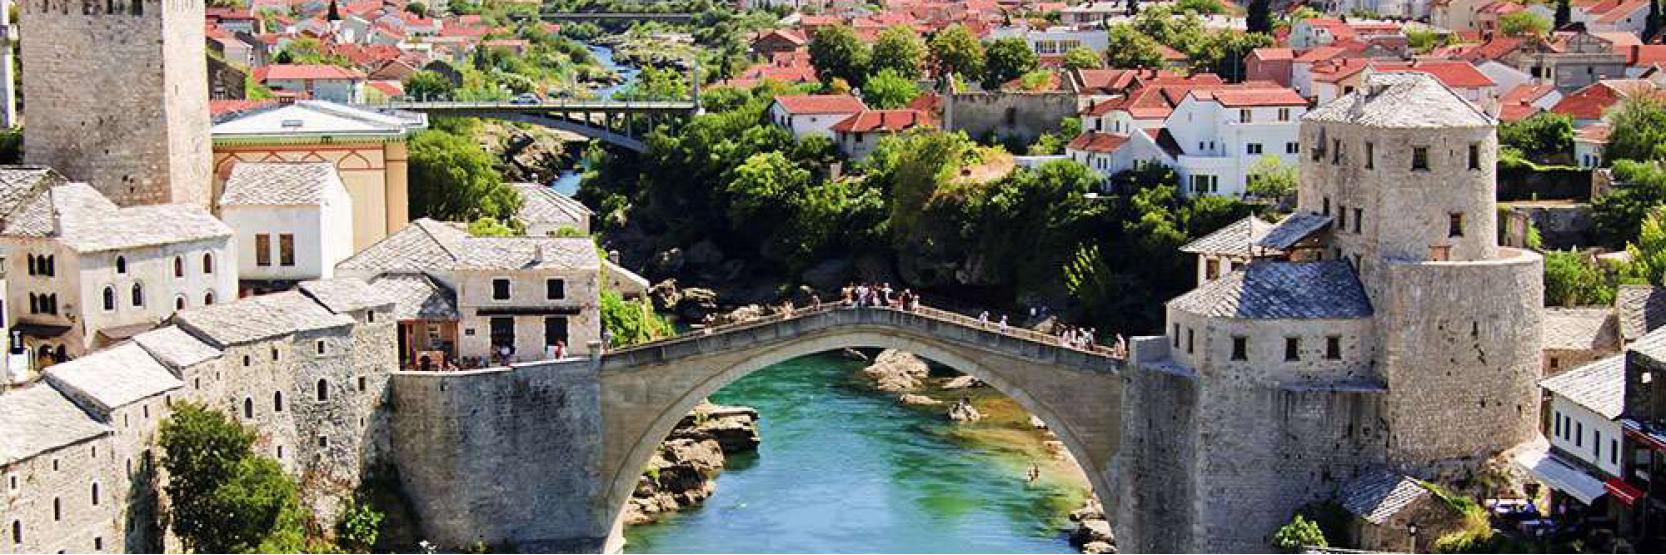 أهم الوجهات السياحية في البوسنة 